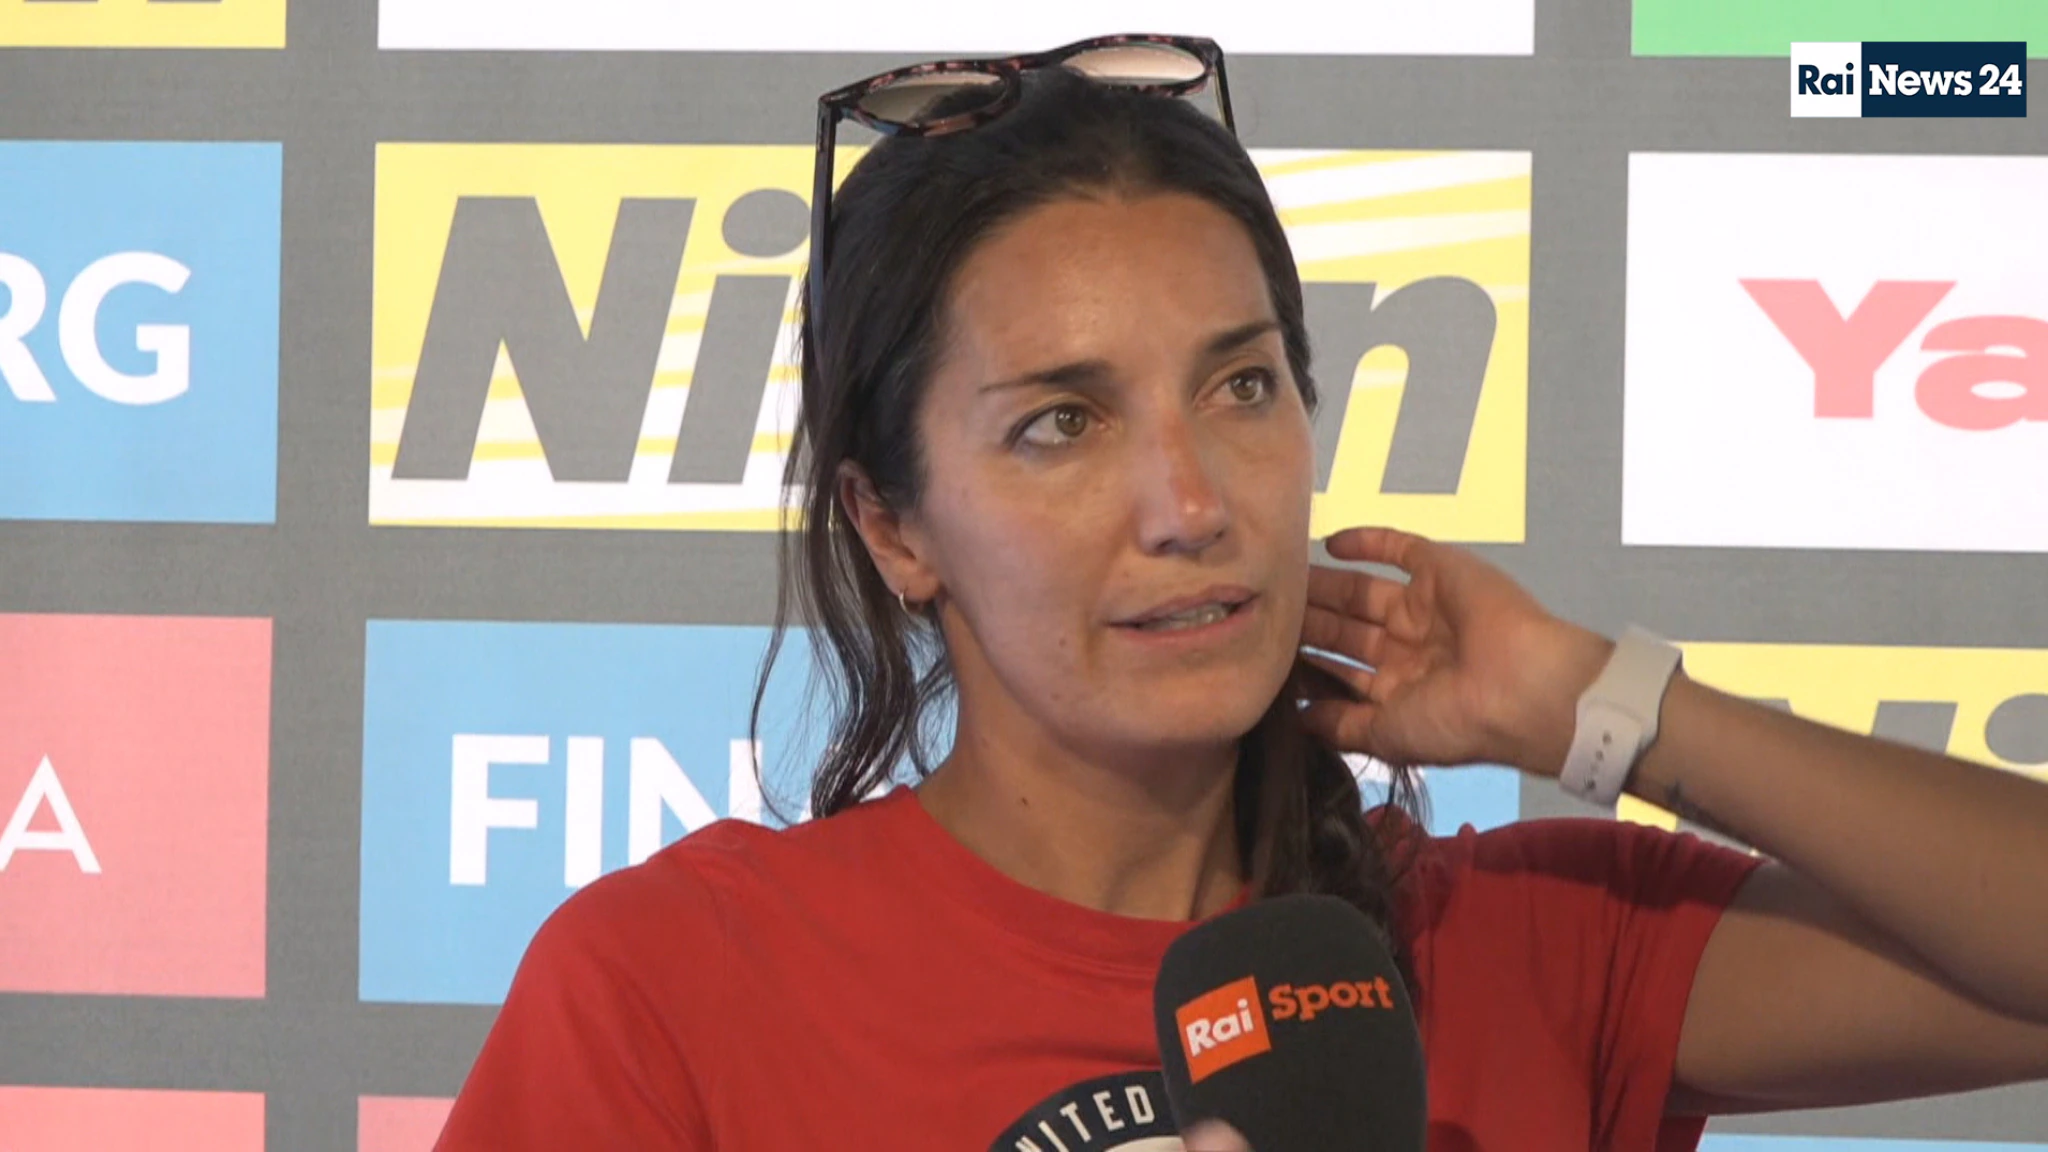 Anita Alvarez, parla l’allenatrice che l’ha salvata: “Non respirava, il cuore non si è mai fermato”